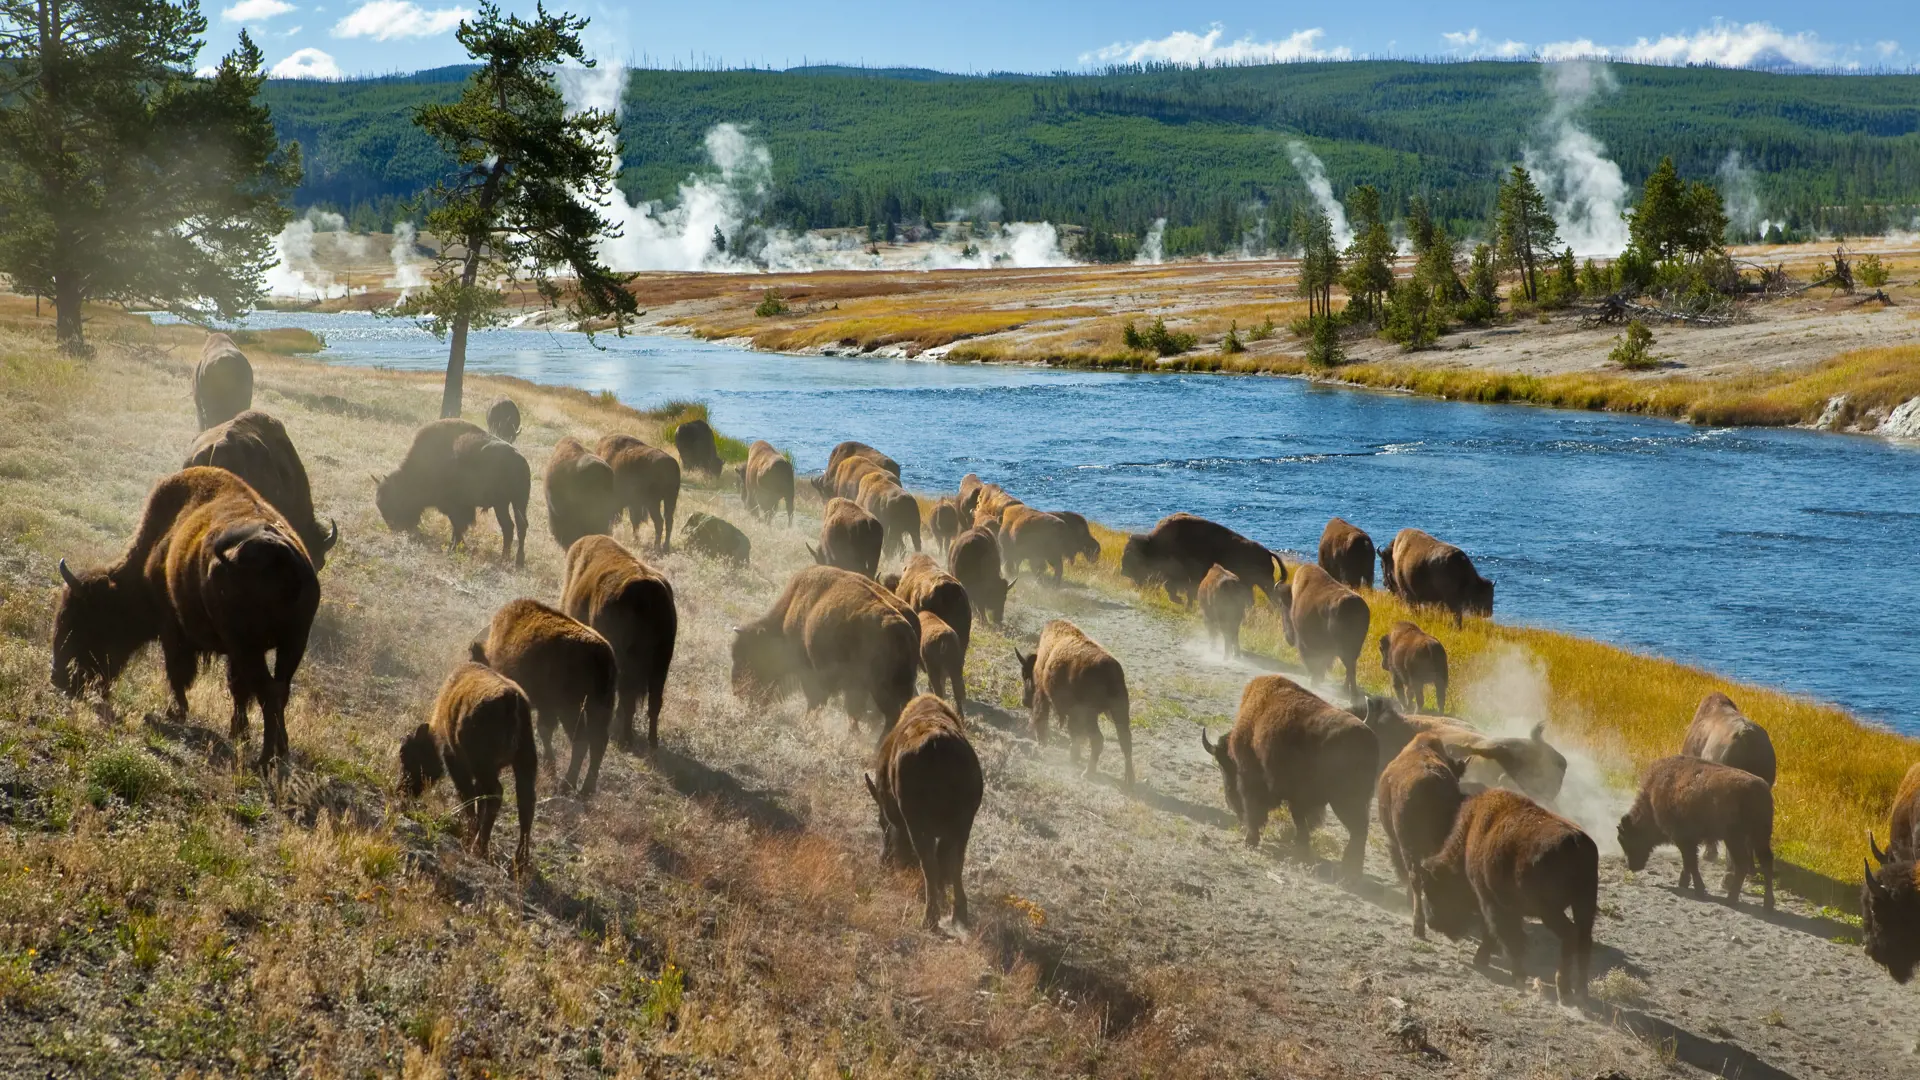 YELLOWSTONE - store bisonflokke præger lanskabet i nationalparken, ligesom de termiske kilder og sprudlende gejsere, Check Point Travel